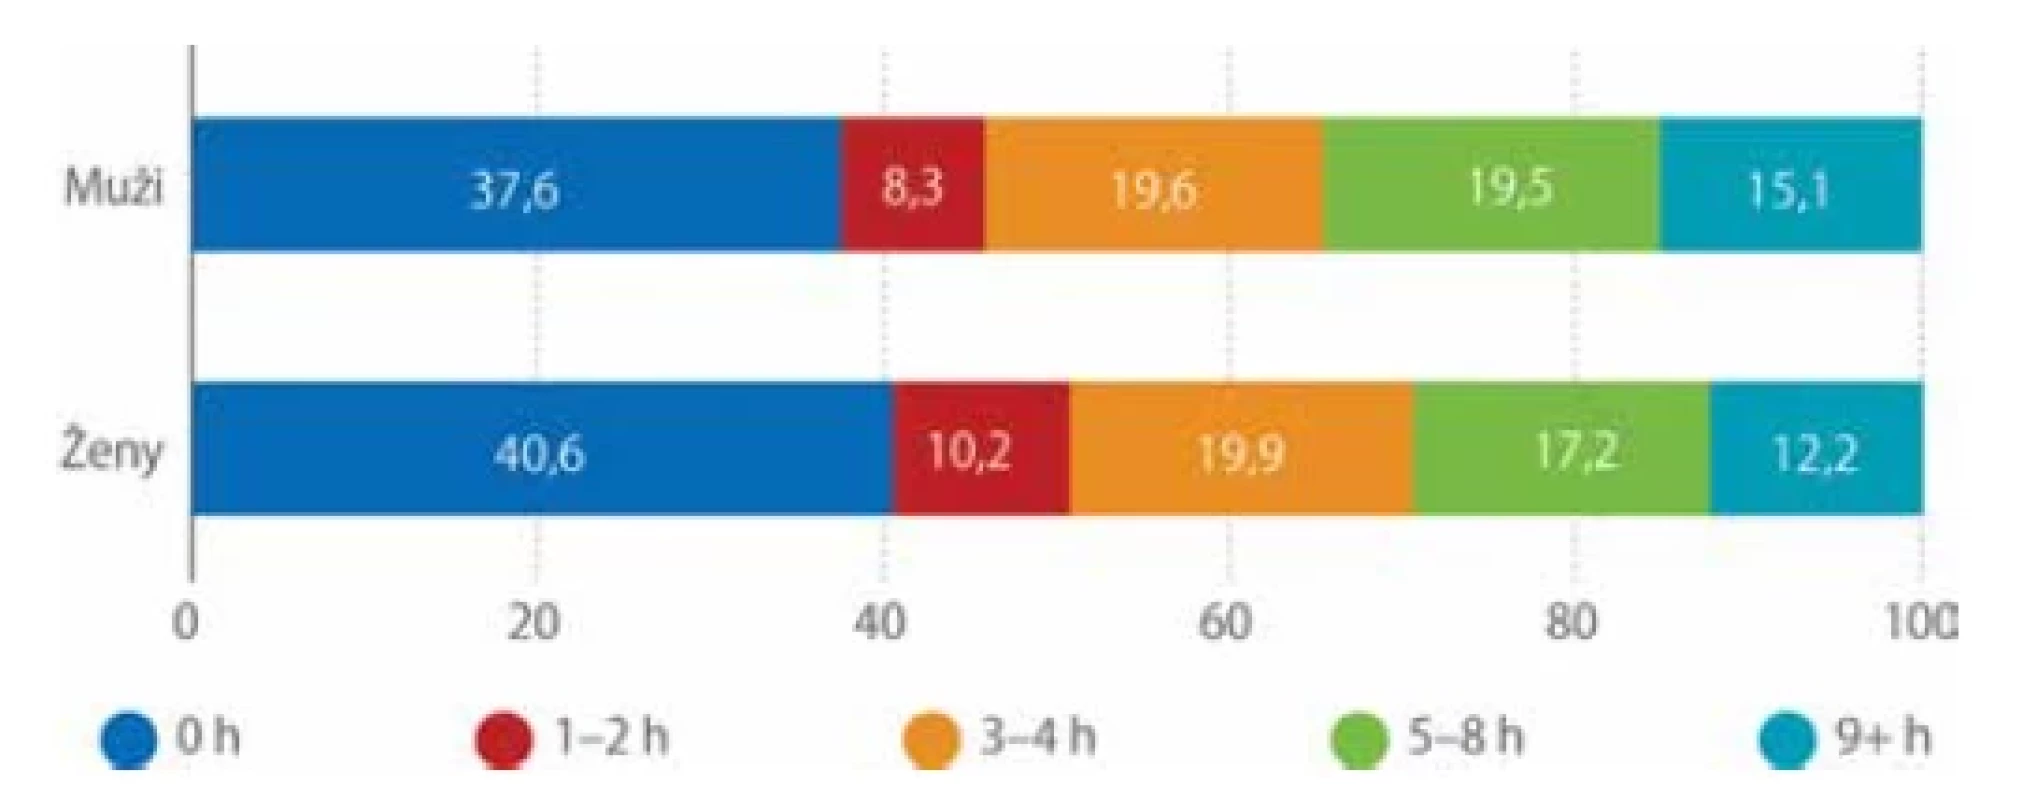 Respondenti podle doby strávené volnočasovou fyzickou aktivitou týdně podle
pohlaví (%) (Měřínská, 2018)